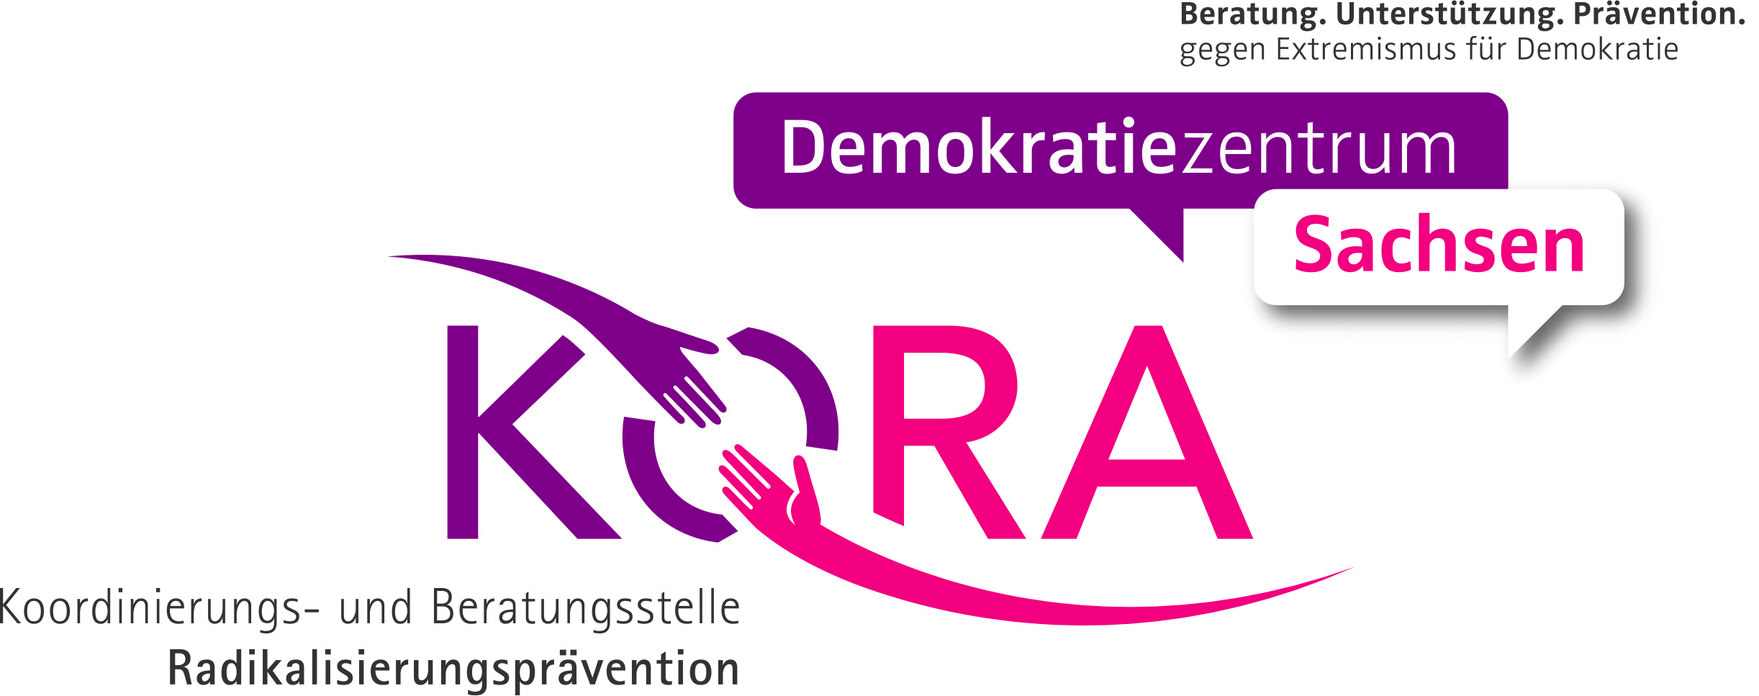 DAs Bild zeigt das Logo der Koordinierungs- und Beratungsstelle Radikalisierungsprävention im Demokratie-Zentrum Sachsen.